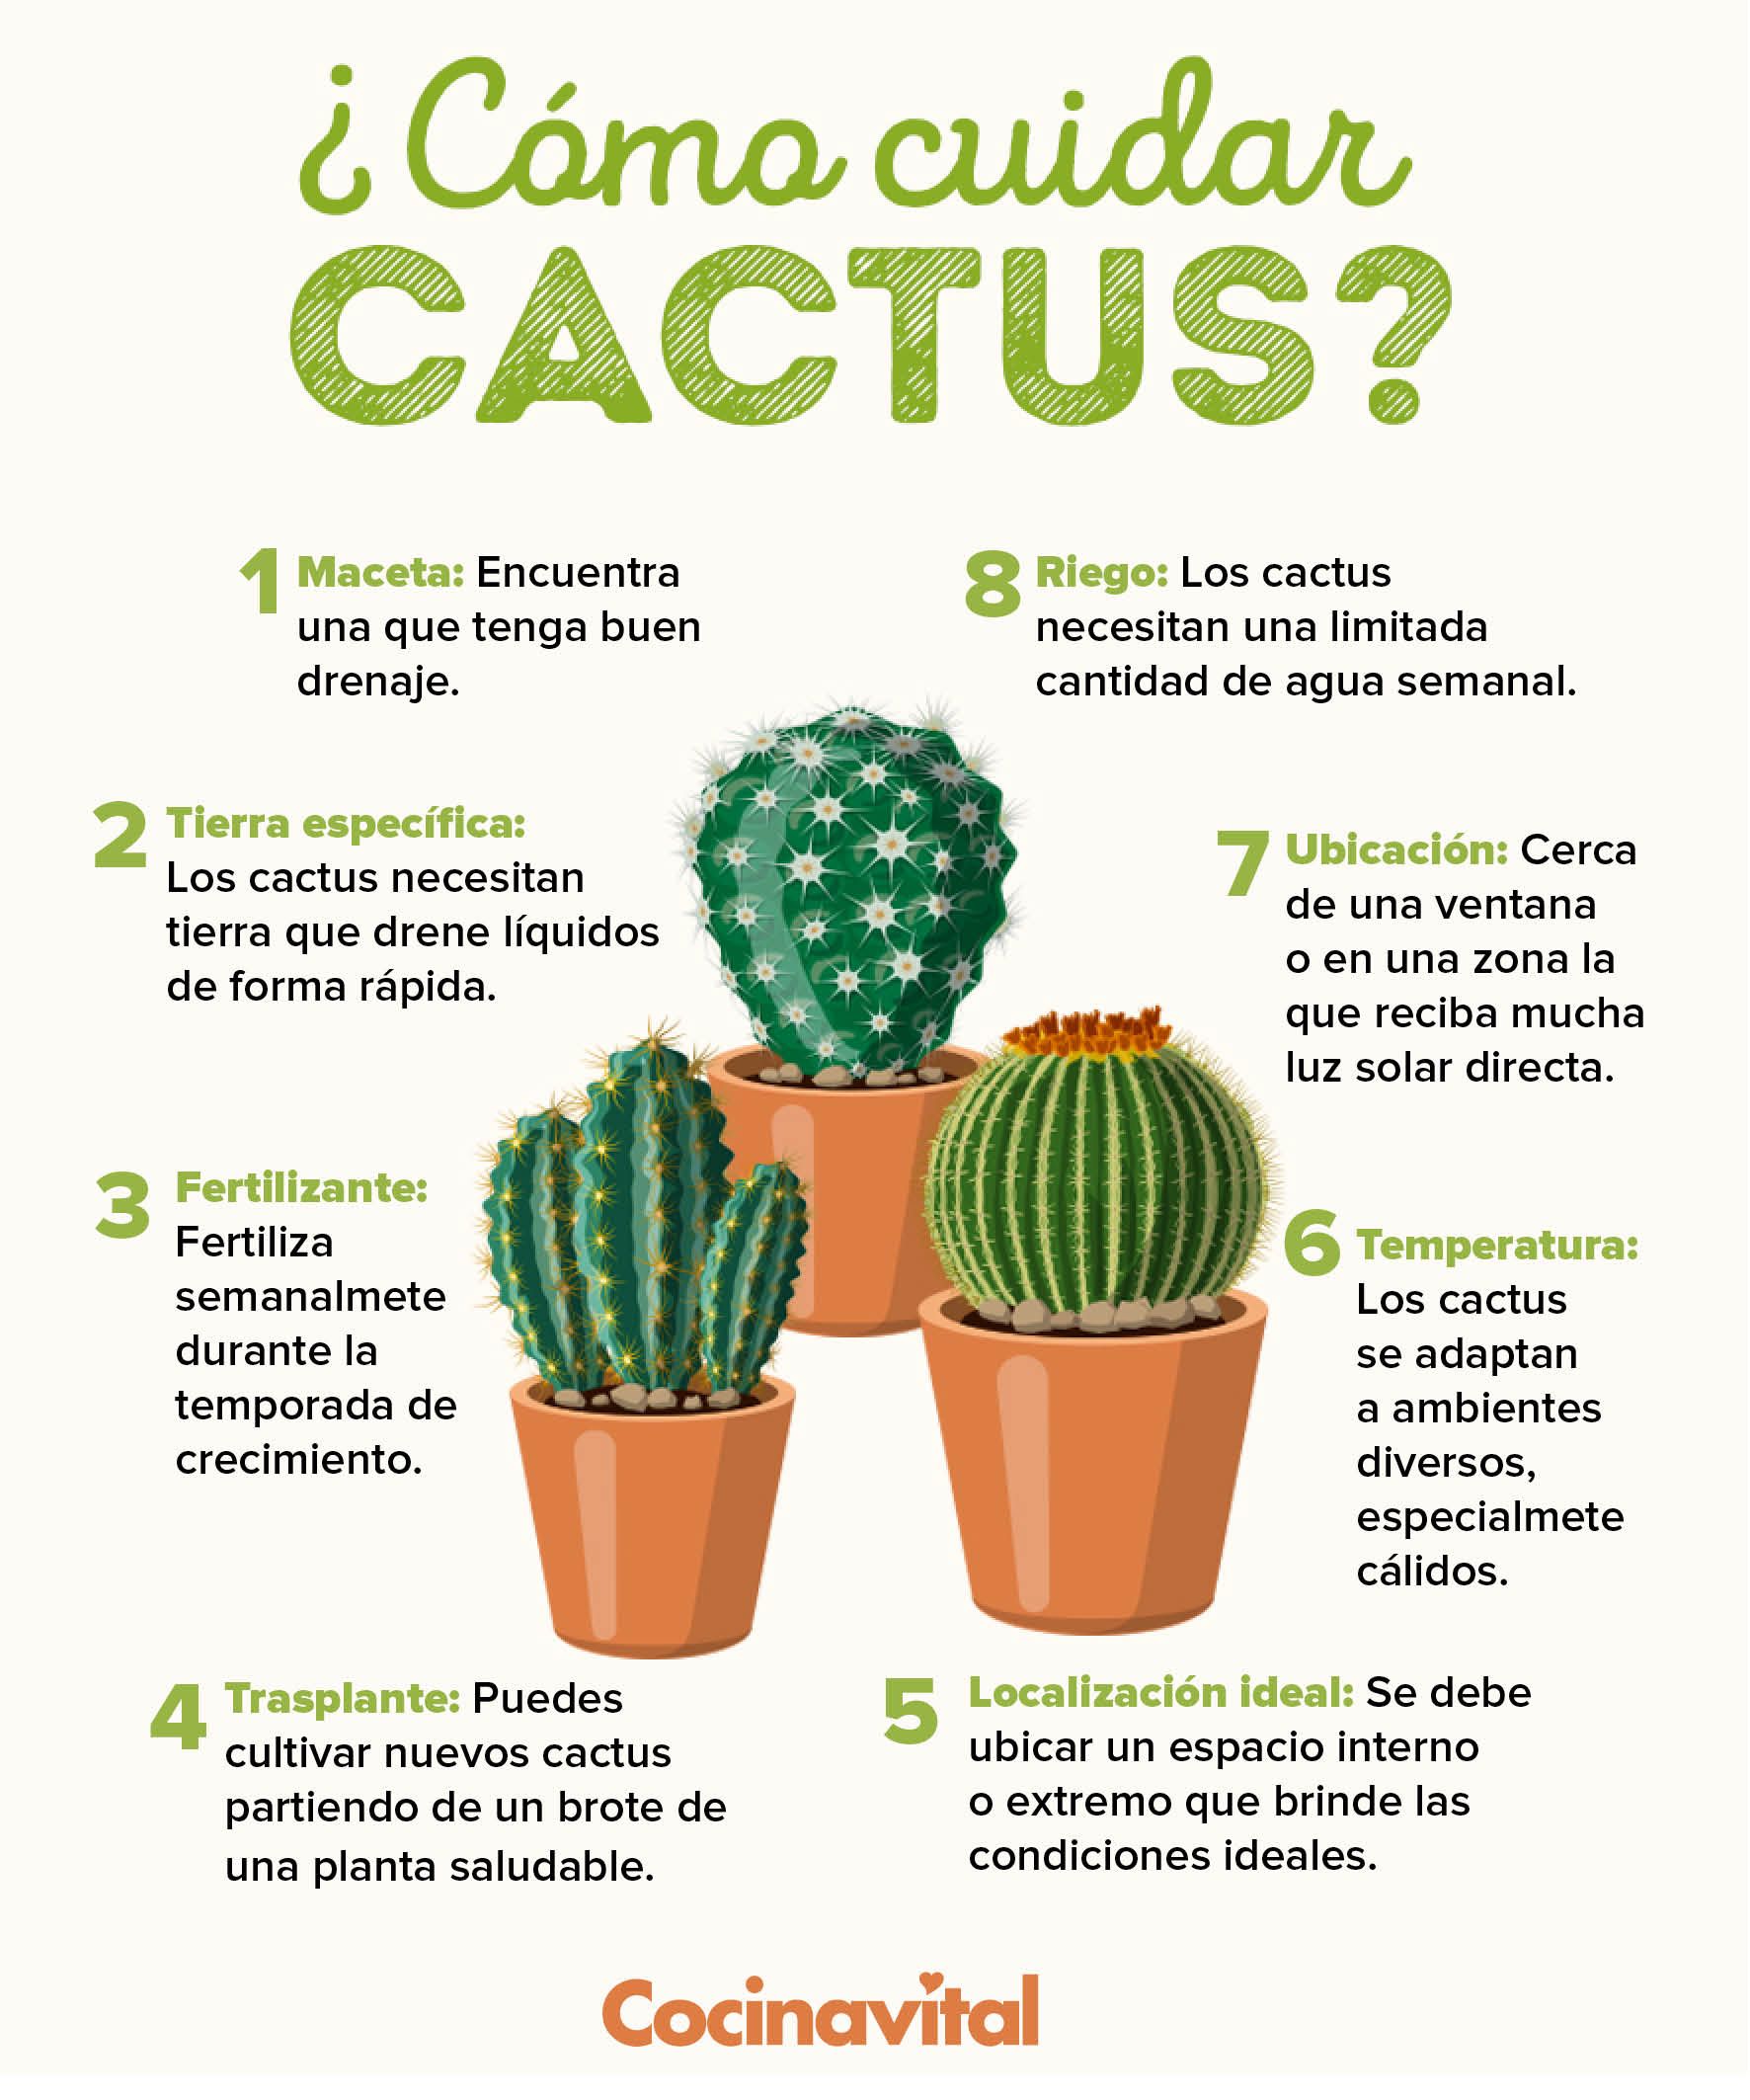 Características del cultivo y cuidado de cactus.